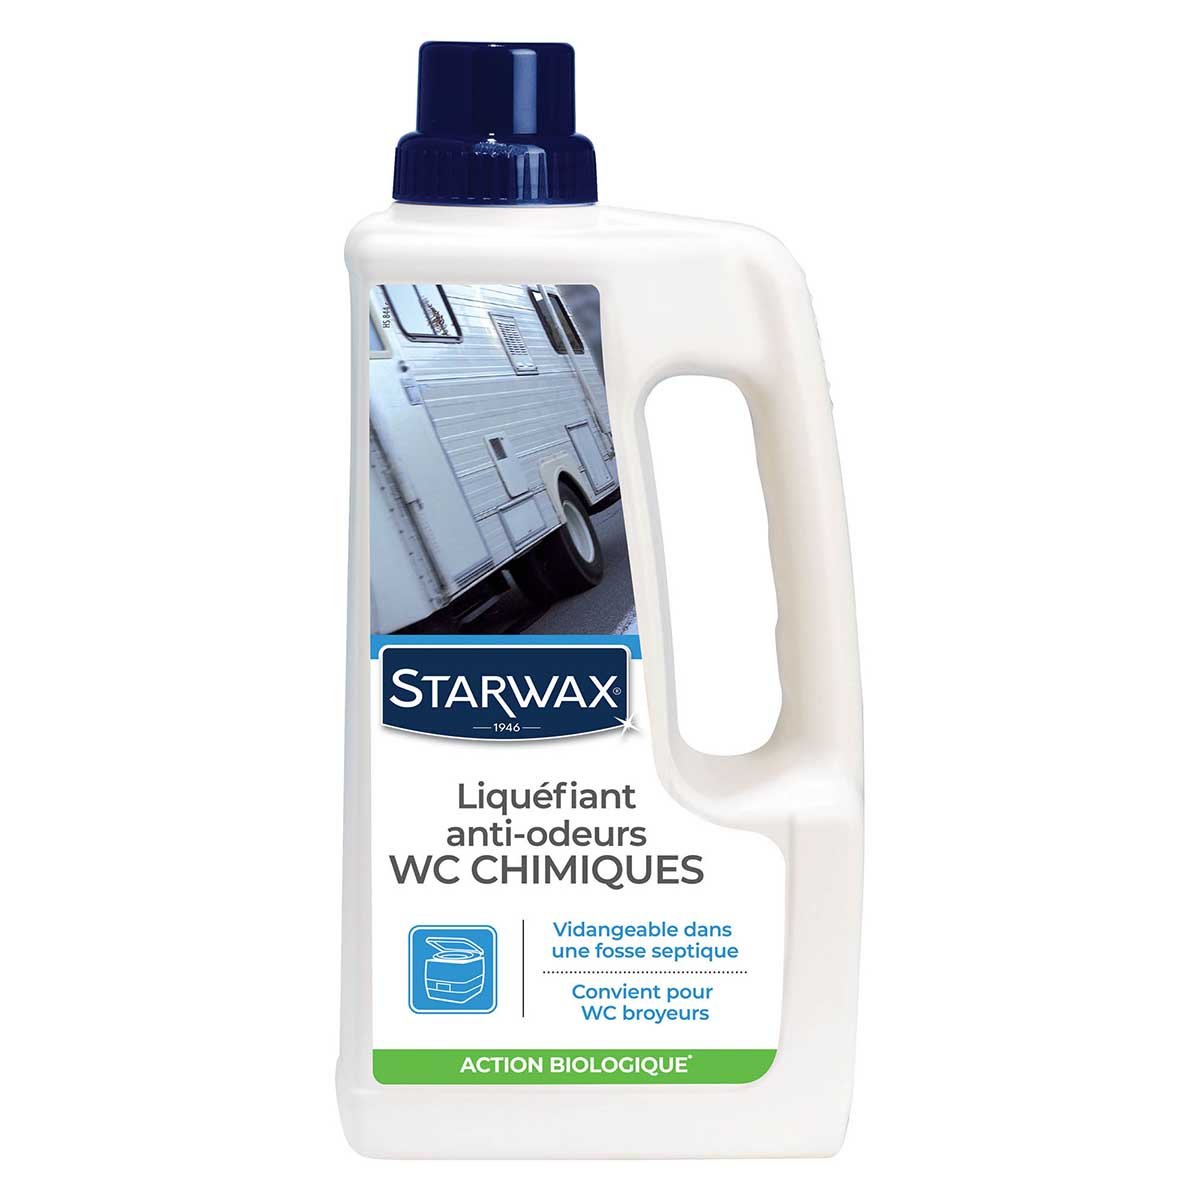 Liquéfiant anti-odeurs pour WC chimiques - Starwax